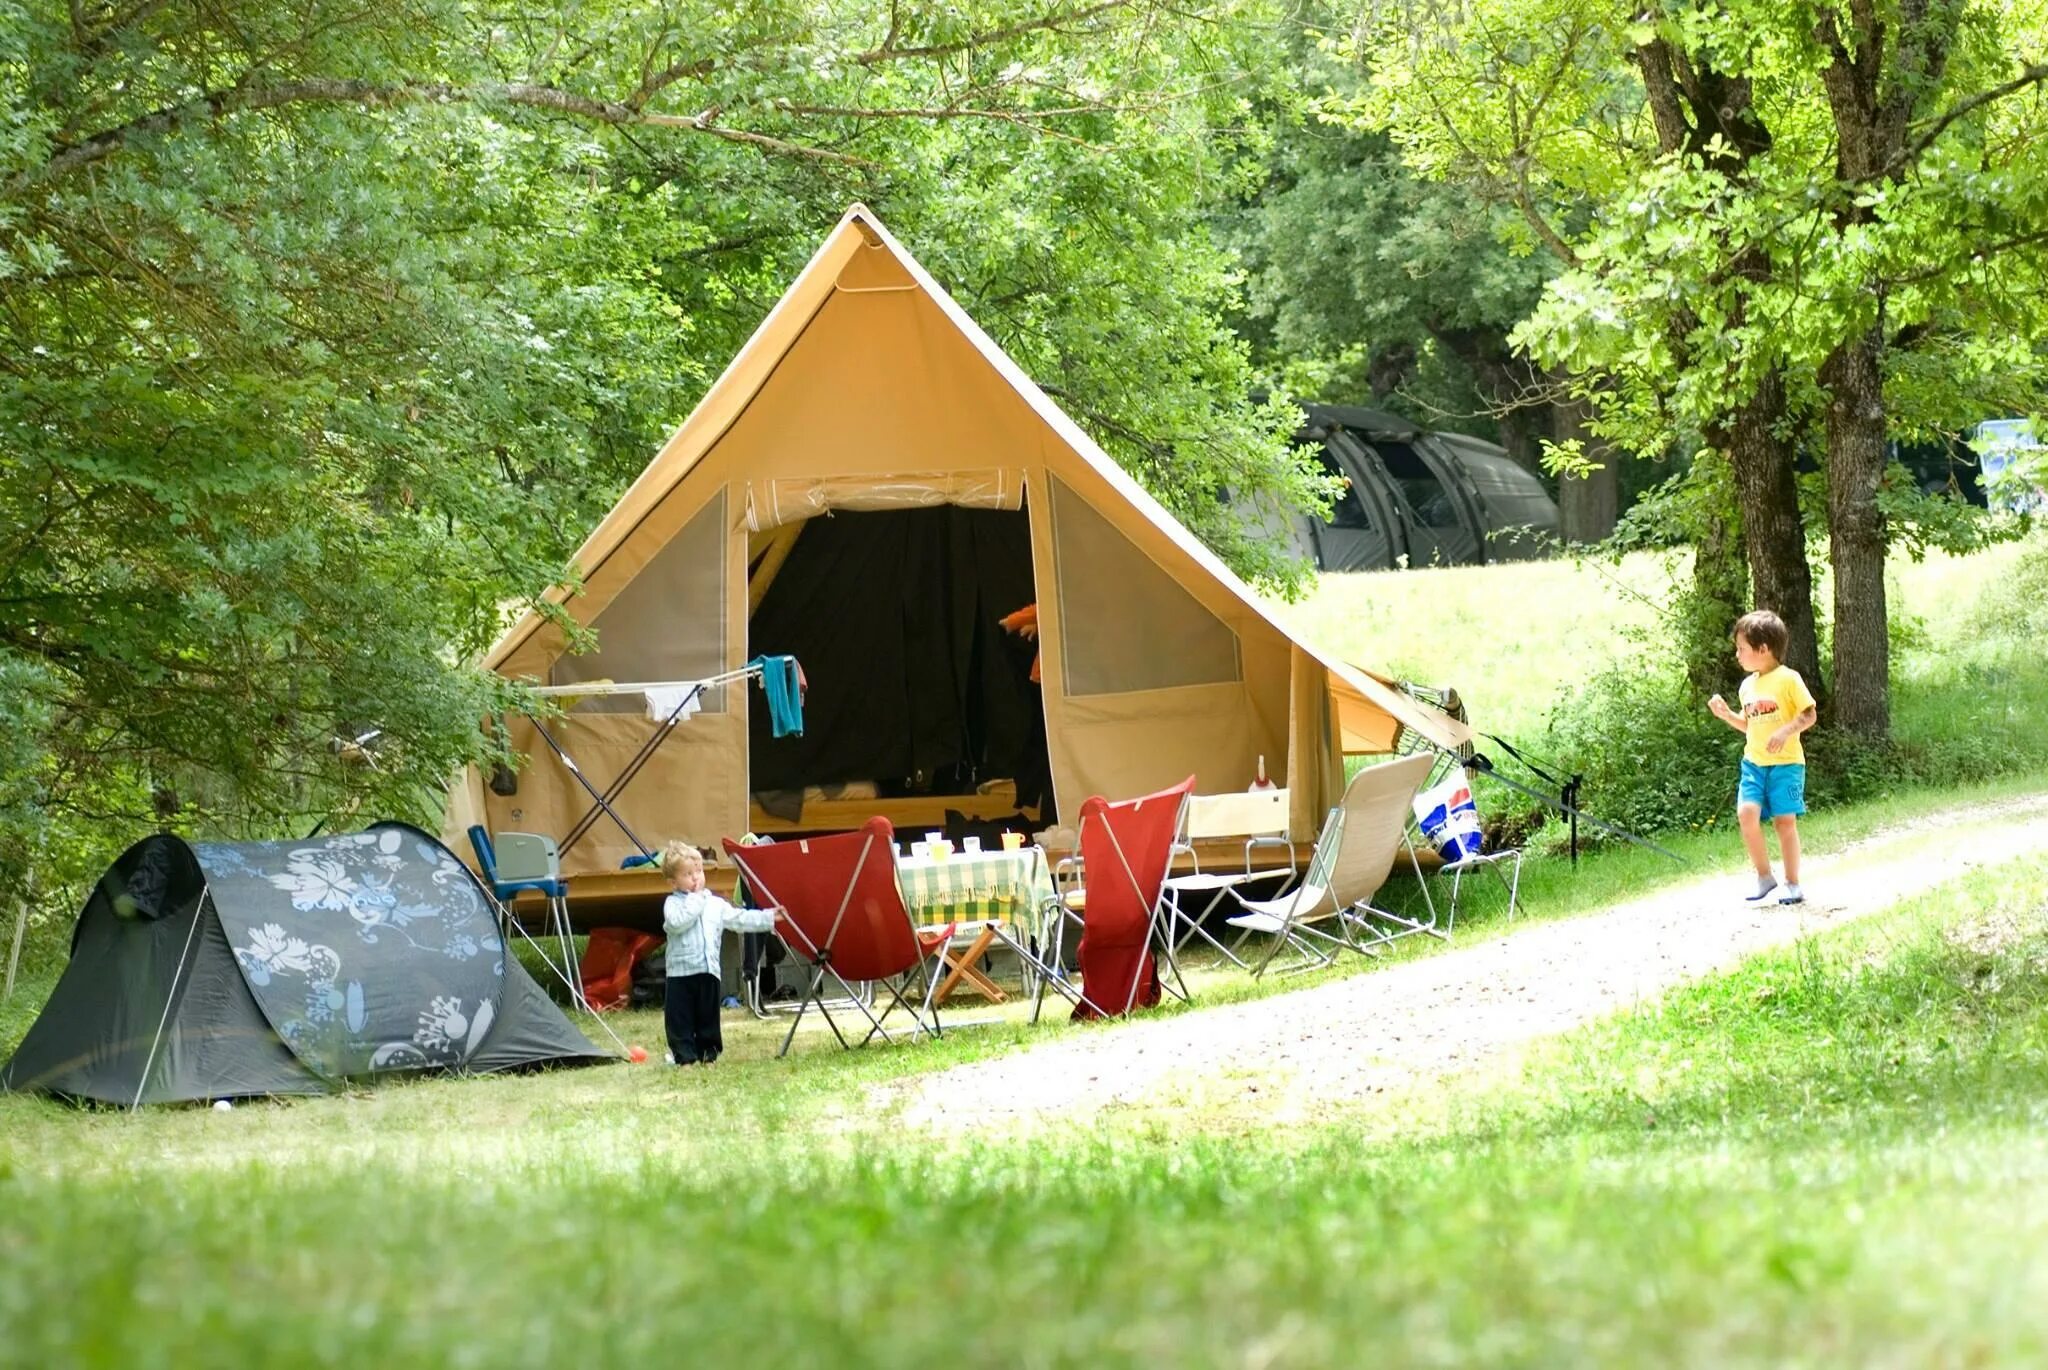 Лагерь кемпинг Молдова. Кемпинг бивуак Терскол. Alakol Camp кемпинг. Лагерь модульный (шатер и 2 палатки) Nash Base Camp. Camp go camping перевод